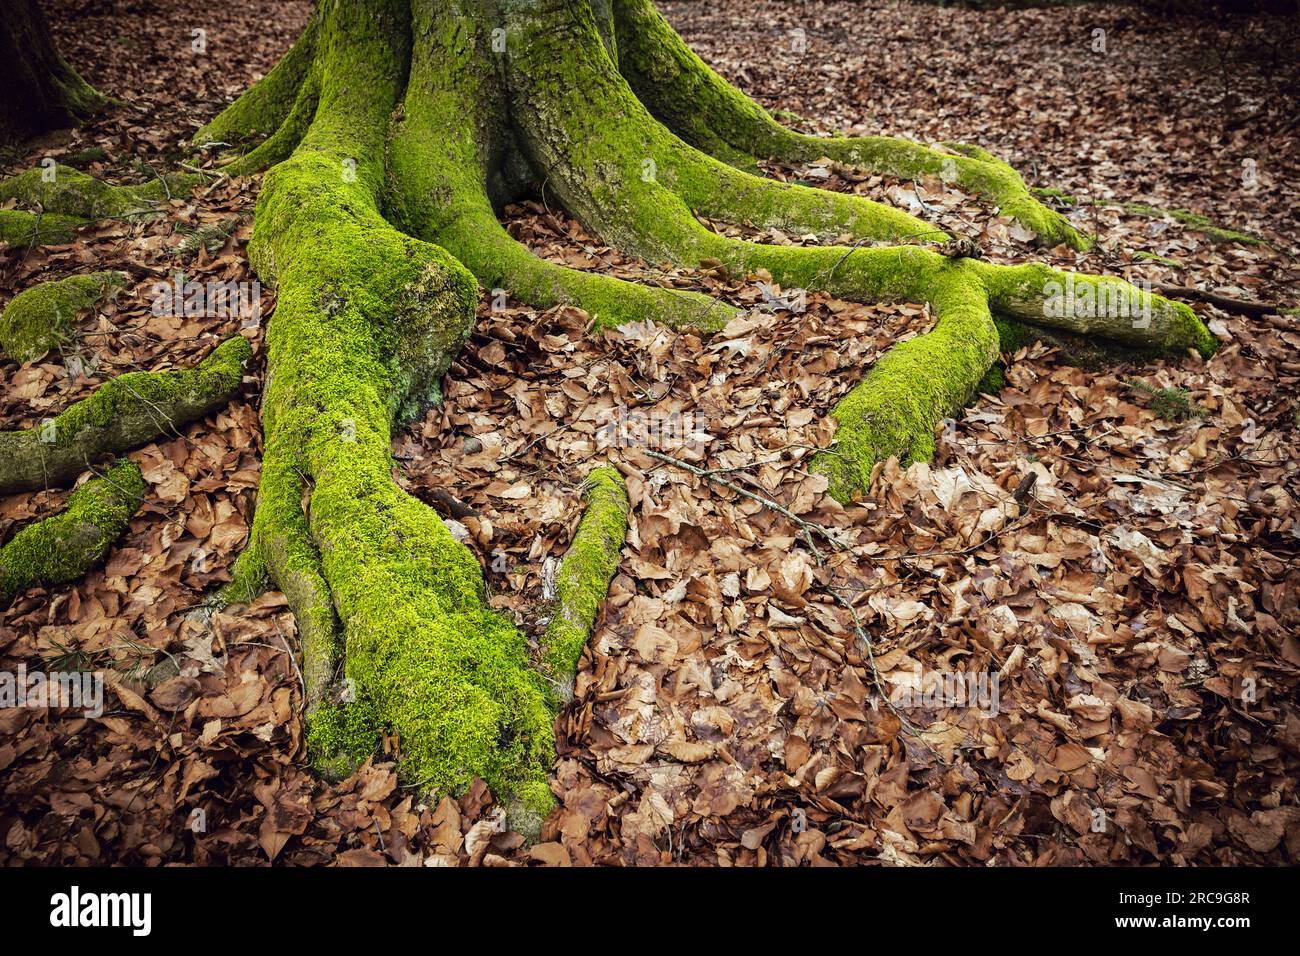 Von grünem Moos bewachsene Baumwurzeln einer alten Buche, teilweise bedeckt von herbstlich gefärbten Buchenlaub Stock Photo